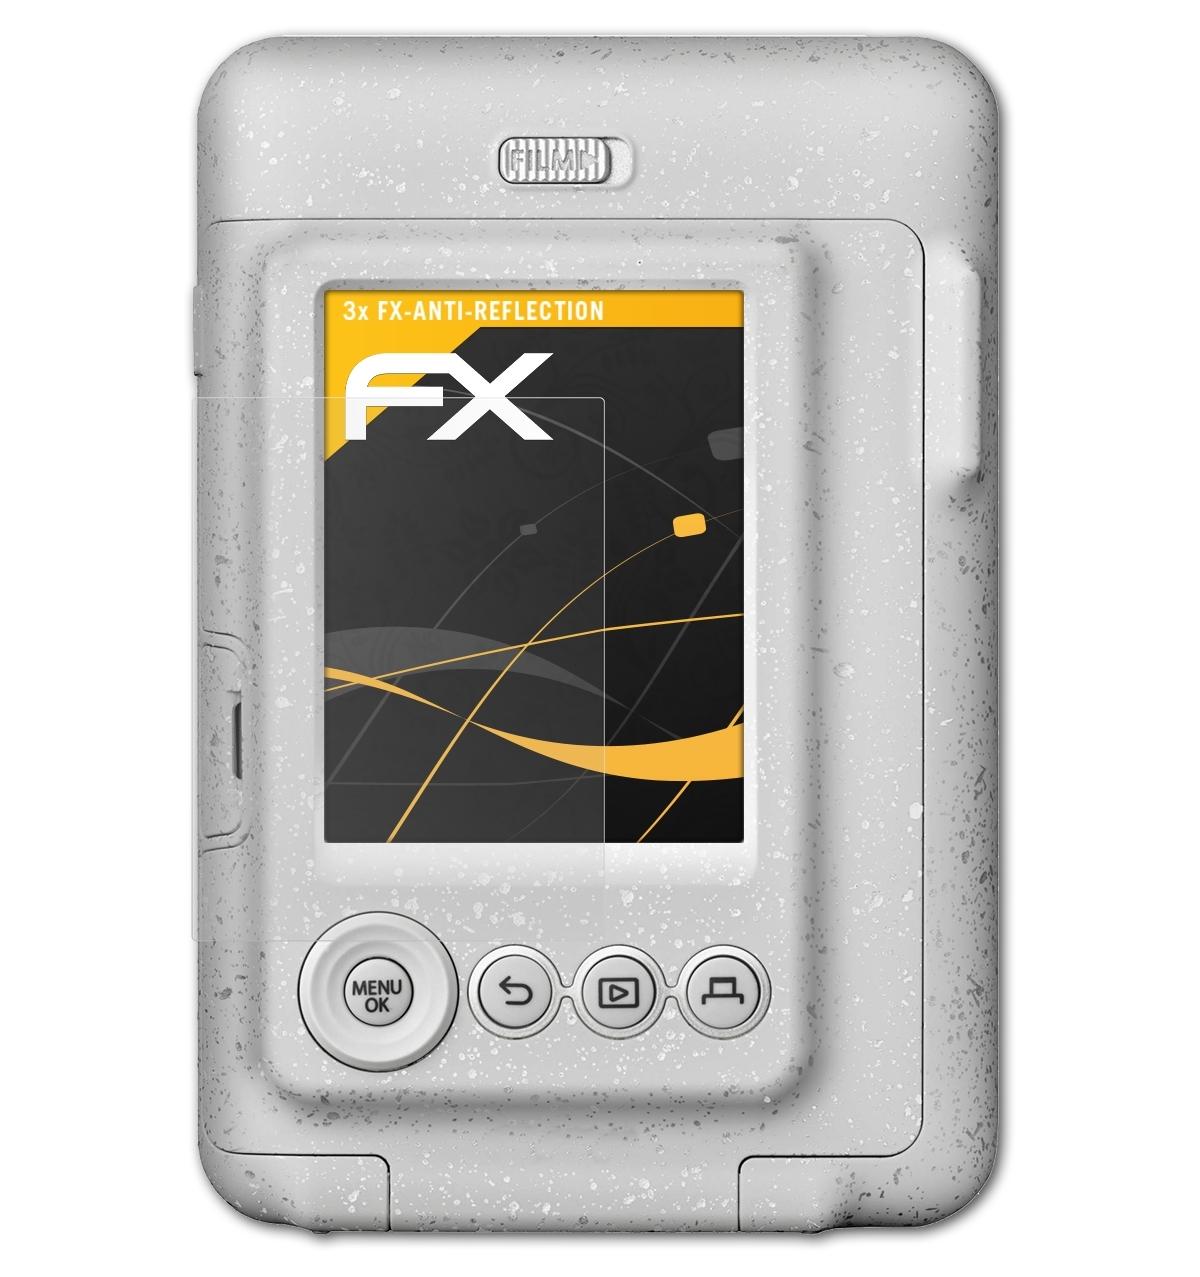 LiPlay) Displayschutz(für FX-Antireflex 3x ATFOLIX Instax mini